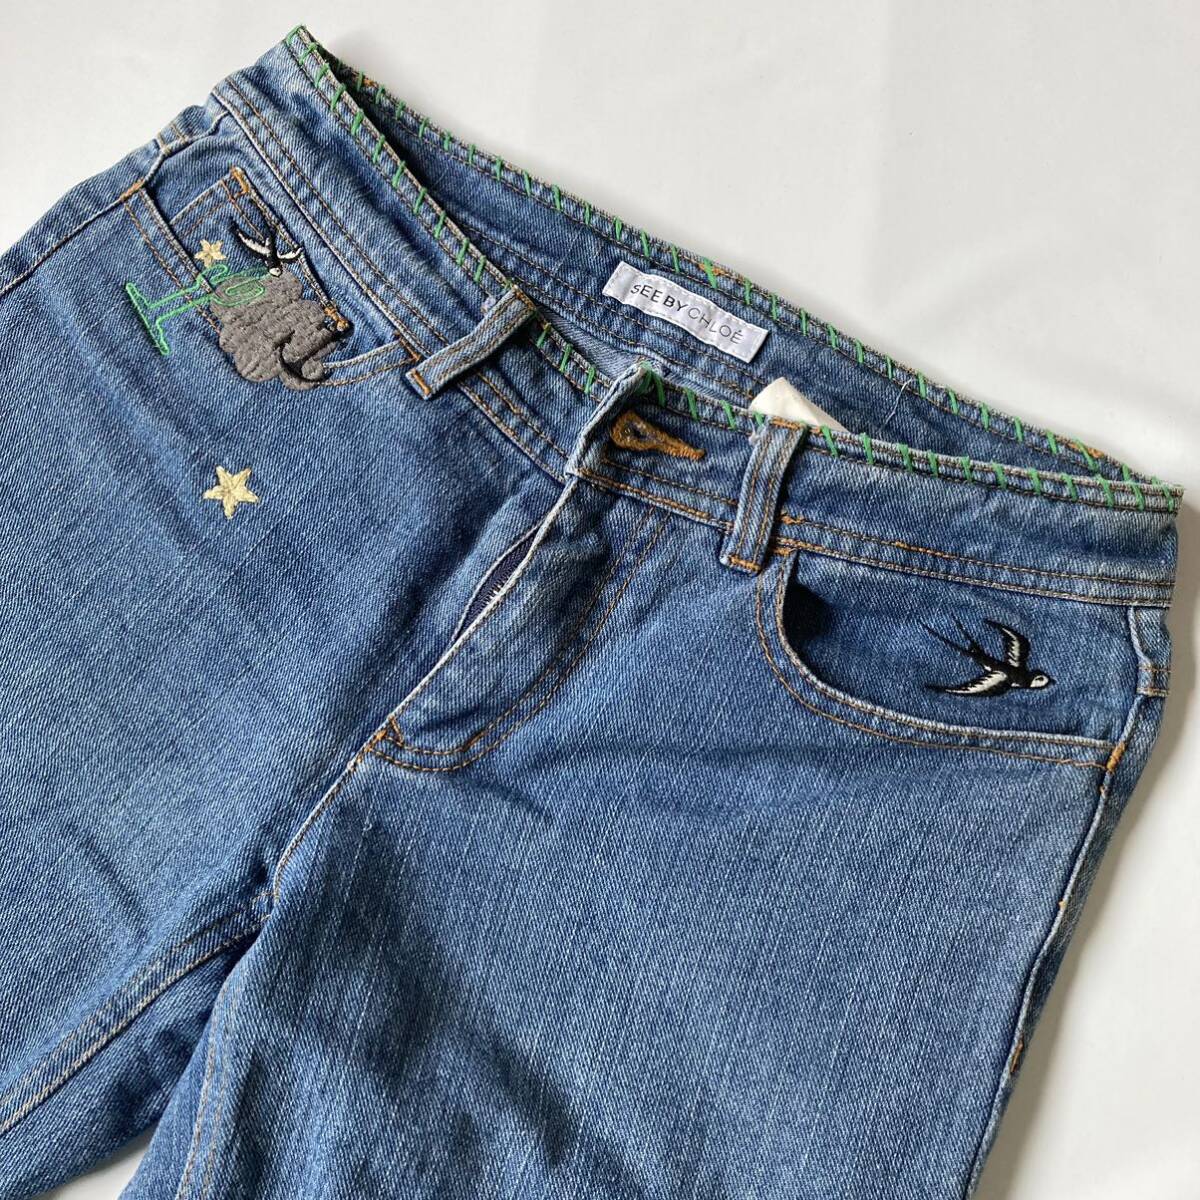  джинсы    женский 　See by Chloe'  размер  26  вышивание   фешенебельный ...　 штука  ...　 винтажный   товар 　... молния 　...　 на улице  　  блиц-цена 